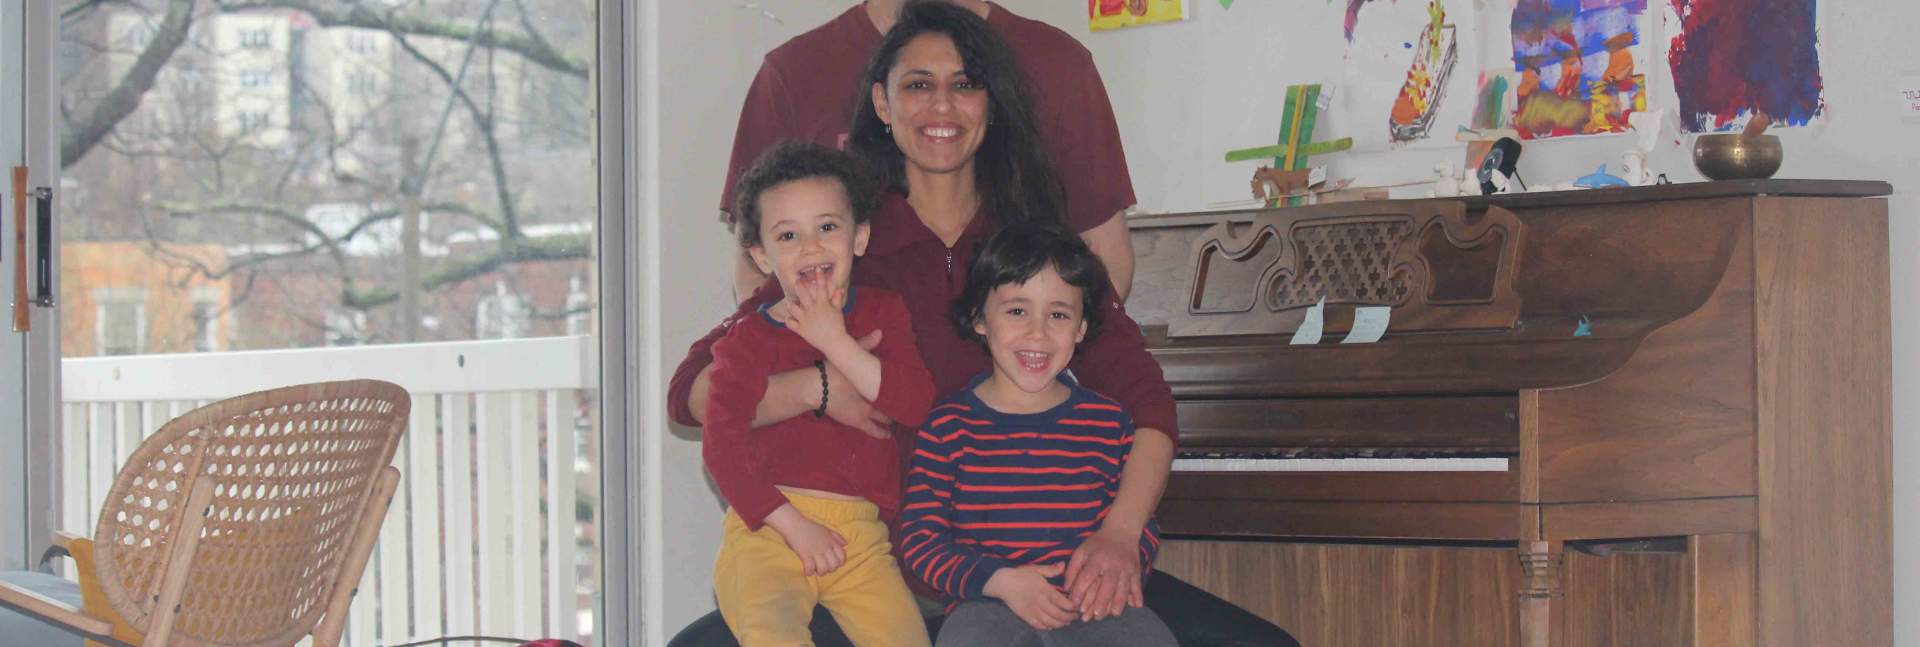 ד"ר דן דוידי עם אשתו ושני ילדיו בבוסטון. "ראינו פוסט בפייסבוק על משפחה שמוסרת פסנתר, ועכשיו כולנו לומדים לנגן"